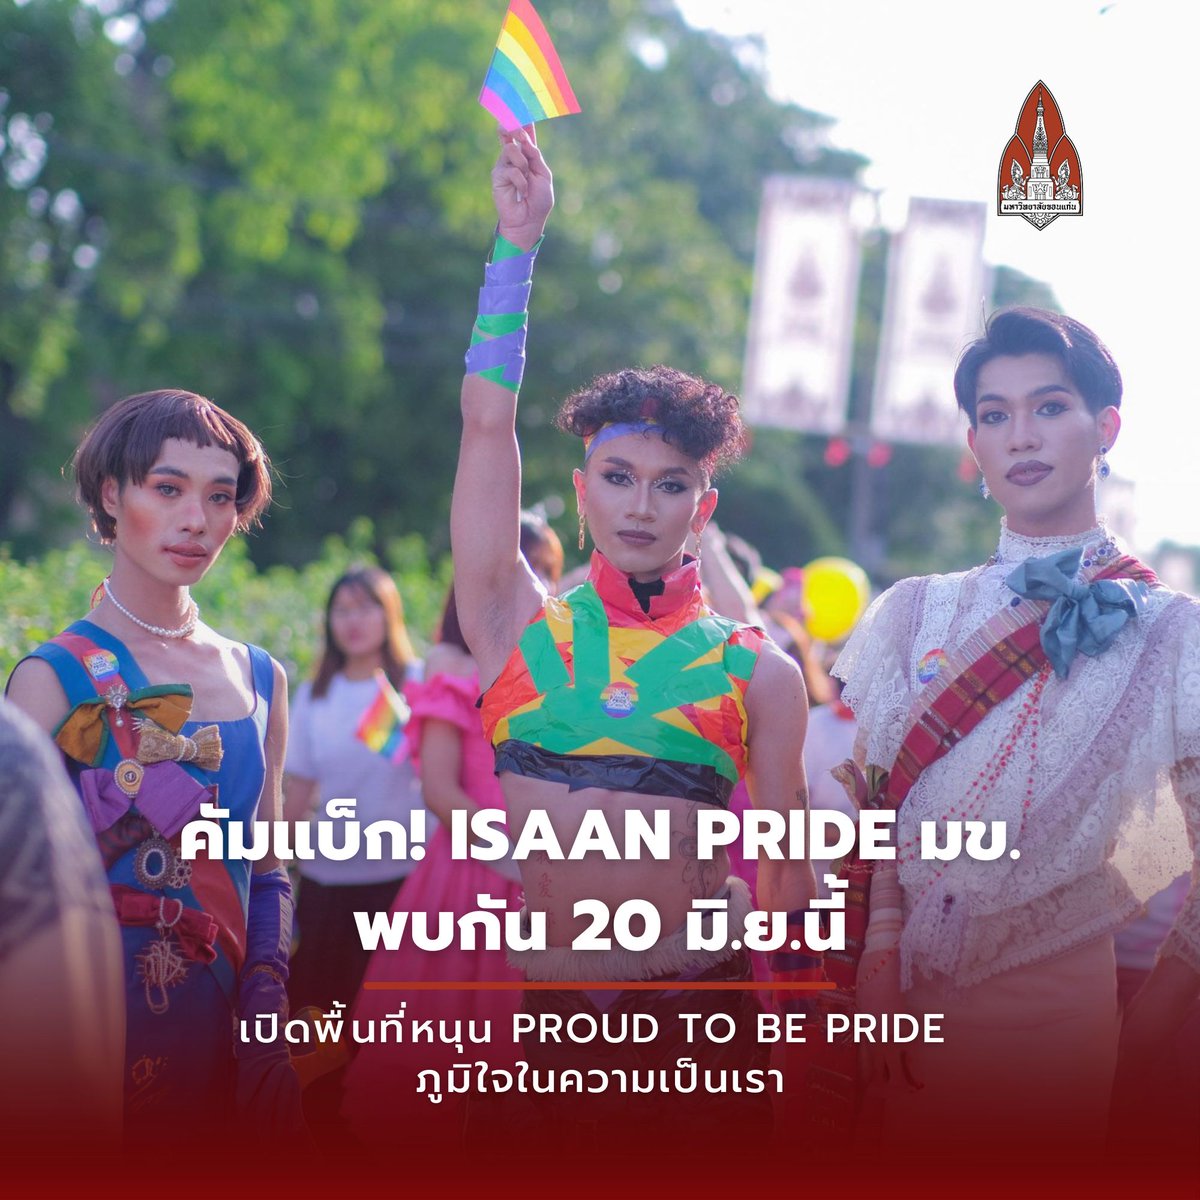 คัมแบ็ก! ISAAN PRIDE มข.เปิดพื้นที่หนุน “Proud to be Pride ภูมิใจในความเป็นเรา” พบกัน 20 มิ.ย.นี้
.
อ่านต่อ : th.kku.ac.th/186069/
#มข
#PrideMonth
#ISAANPRIDE2024